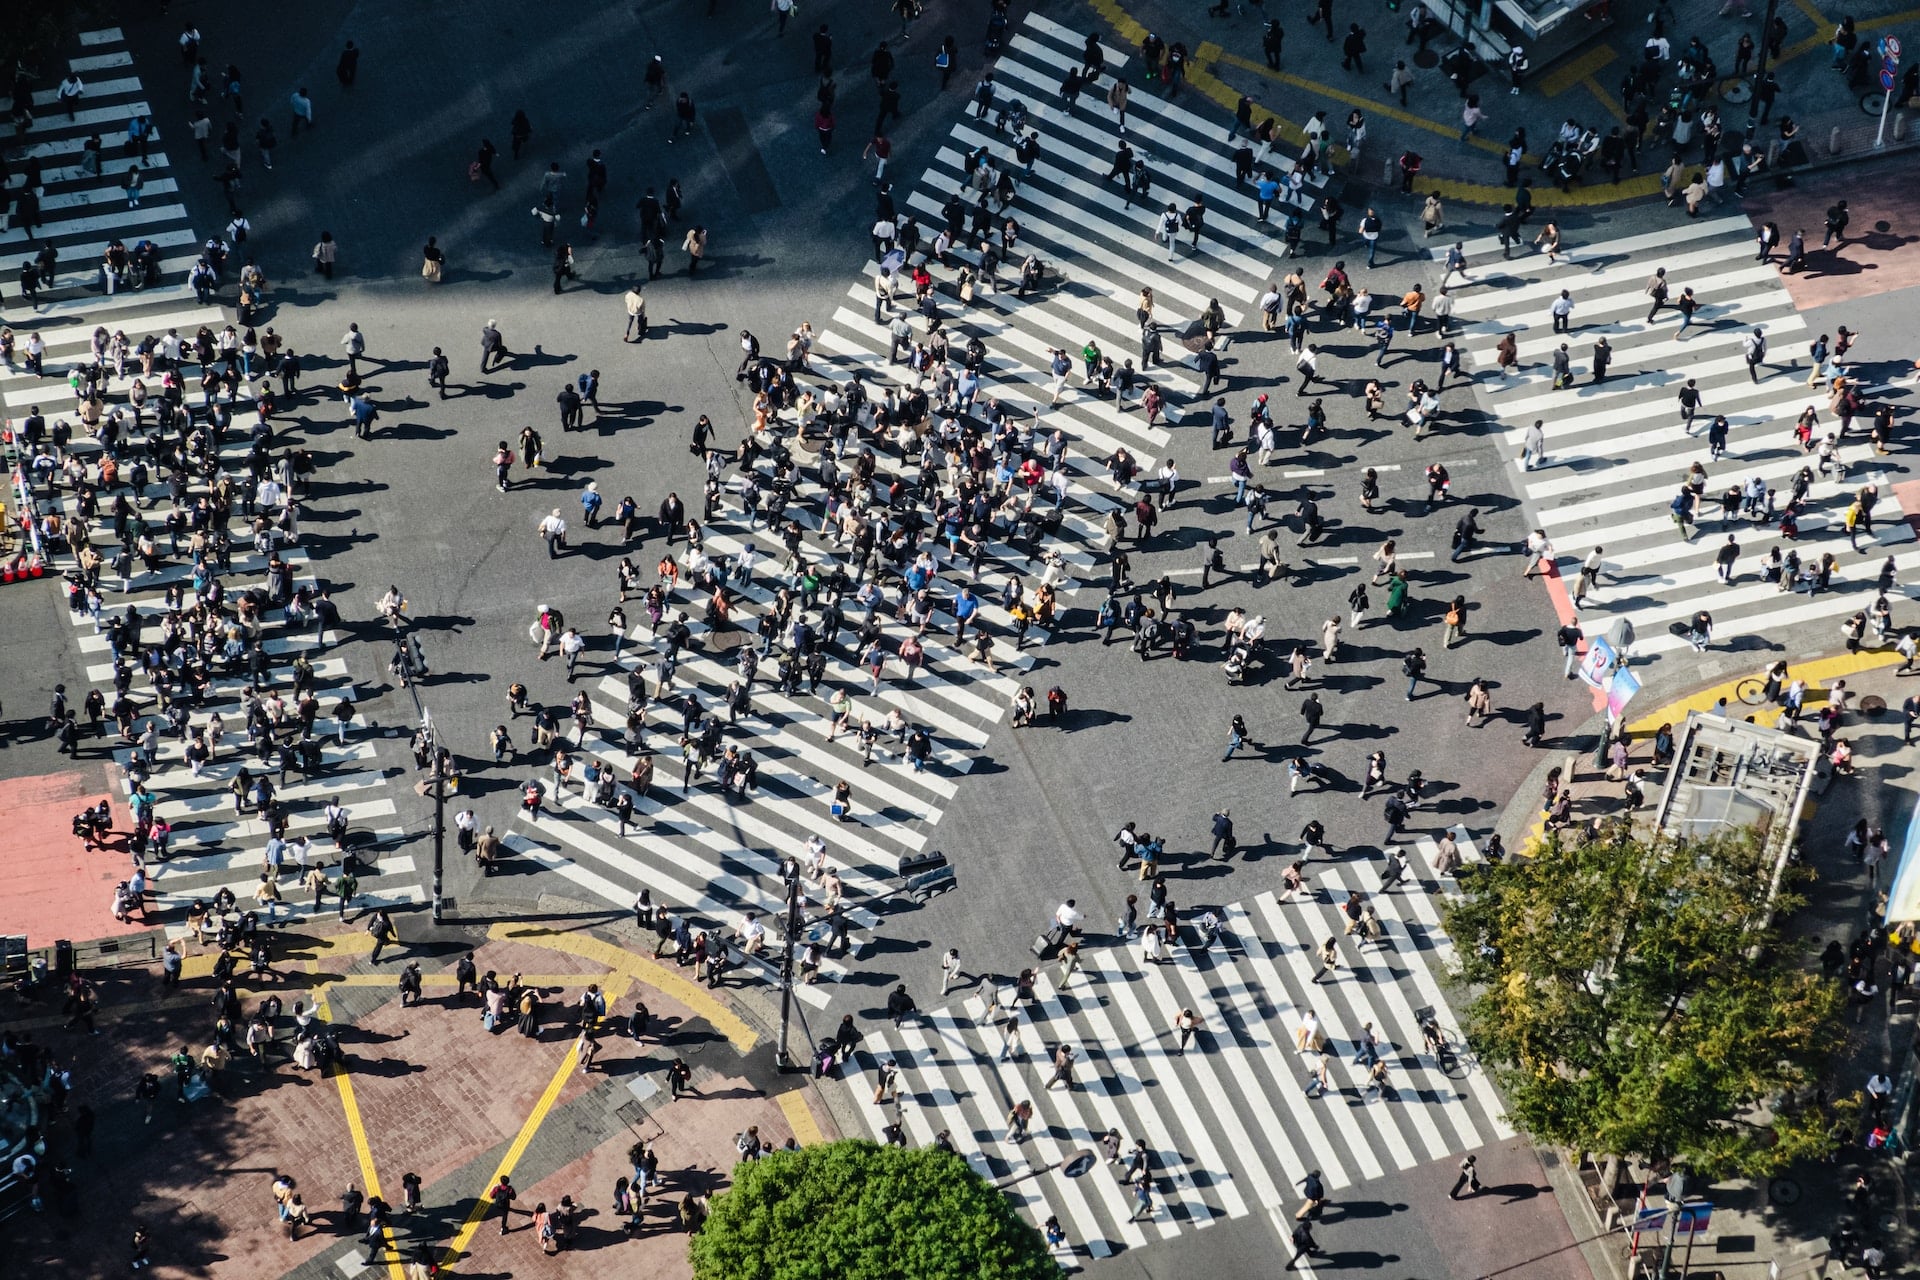 Famosa por su emblemático paso de peatones, Shibuya es una de las zonas más emocionantes de Tokio.